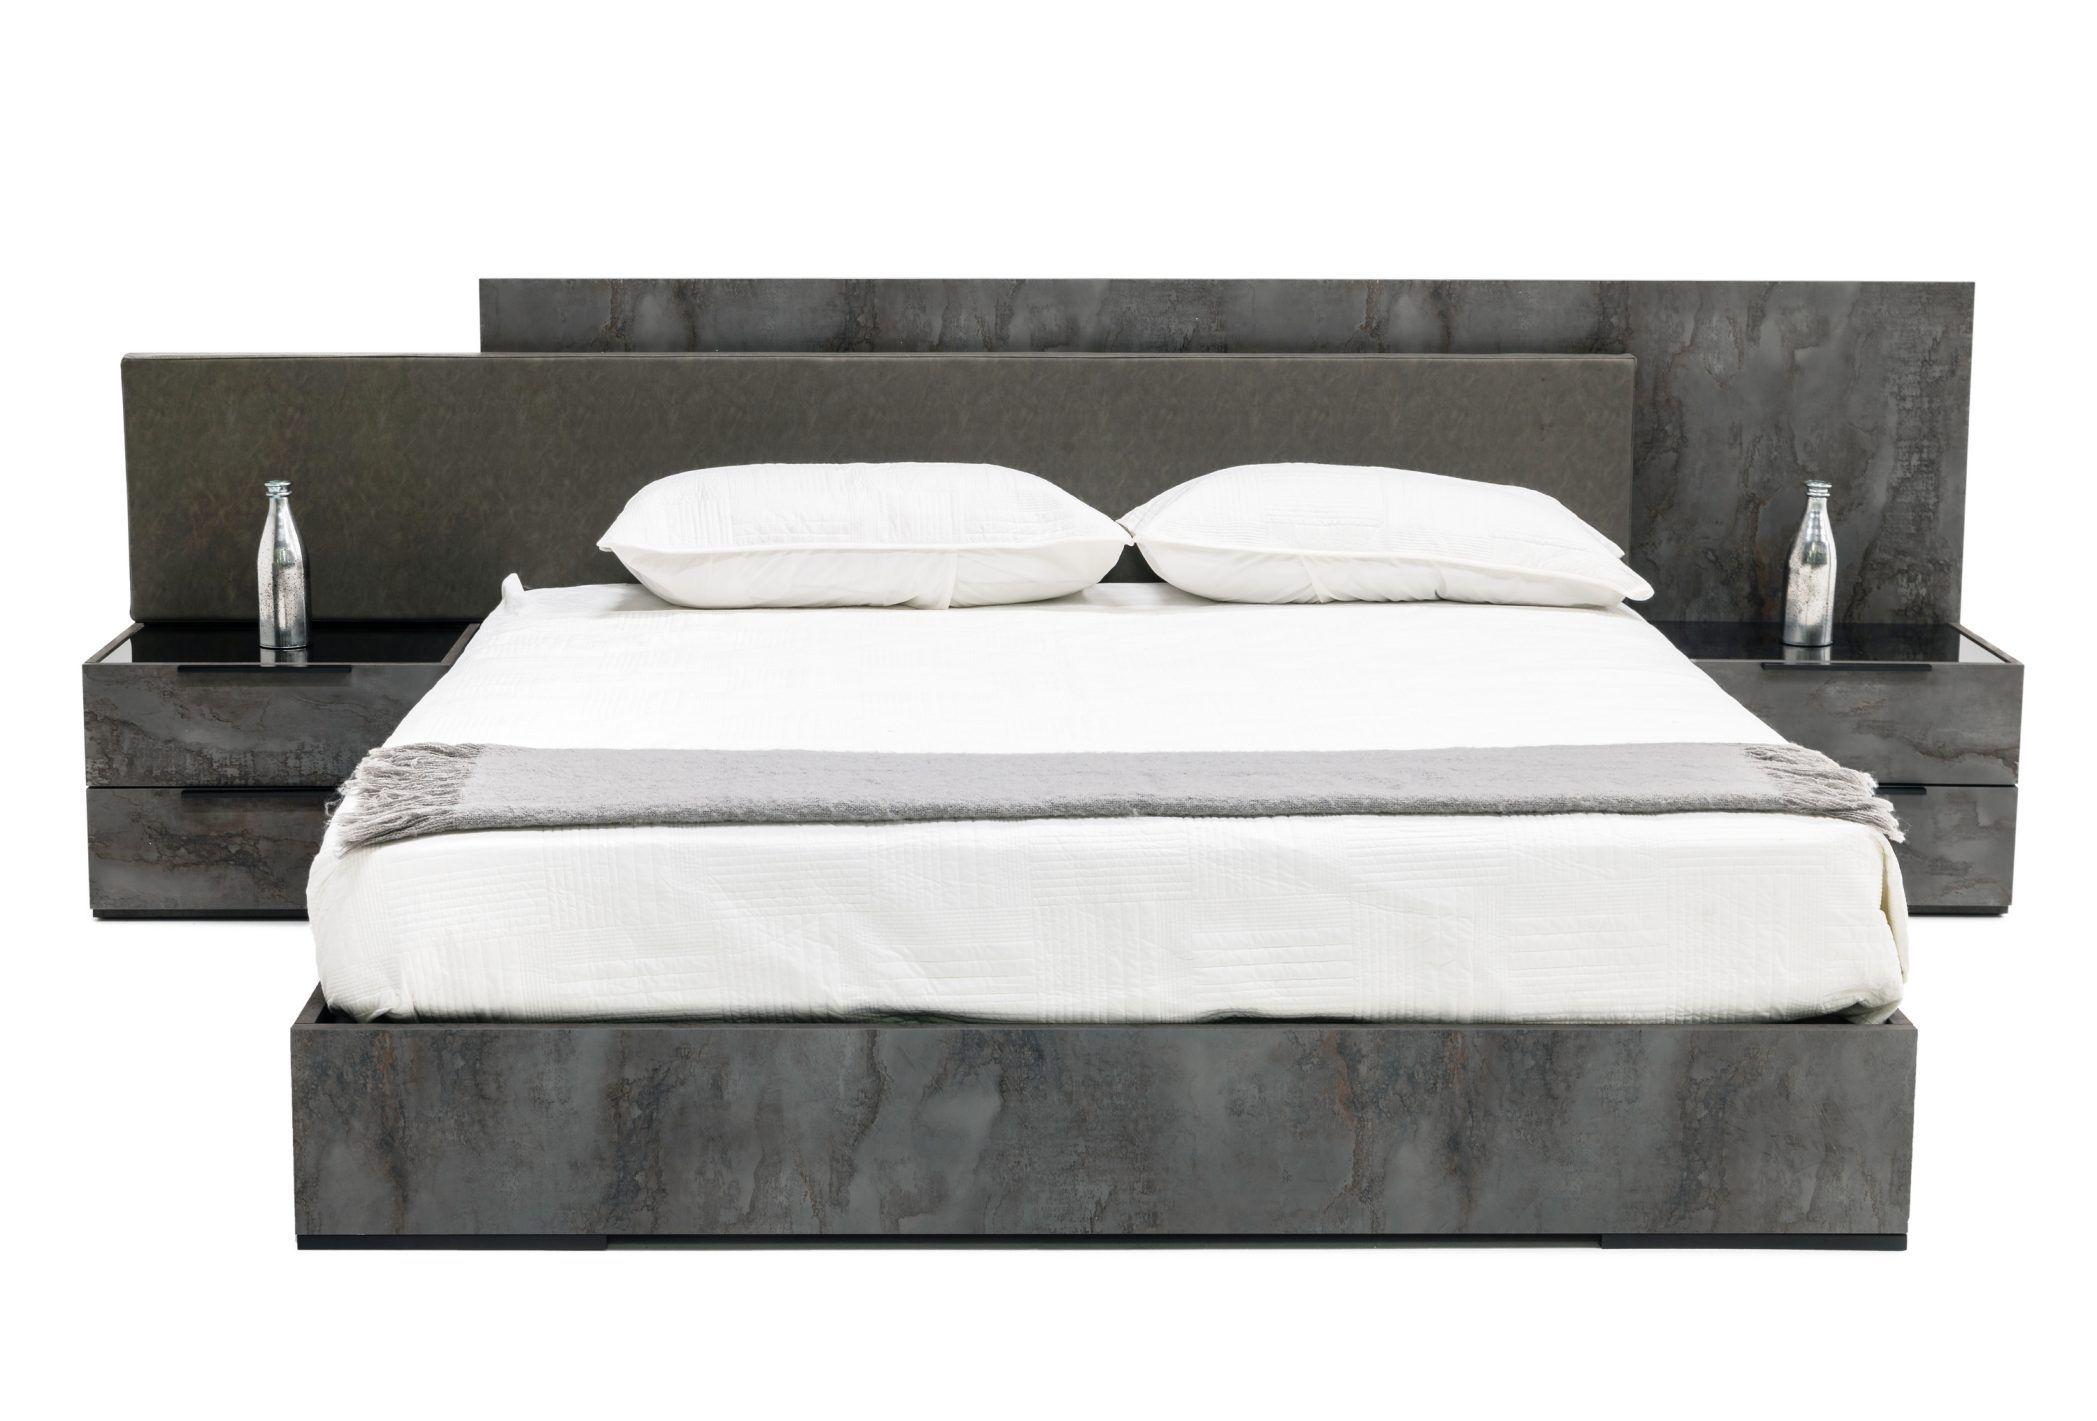 

    
Volcano Oxide Grey CAL King Bedroom Set 3 Nova Domus Ferrara VIG Contemporary
